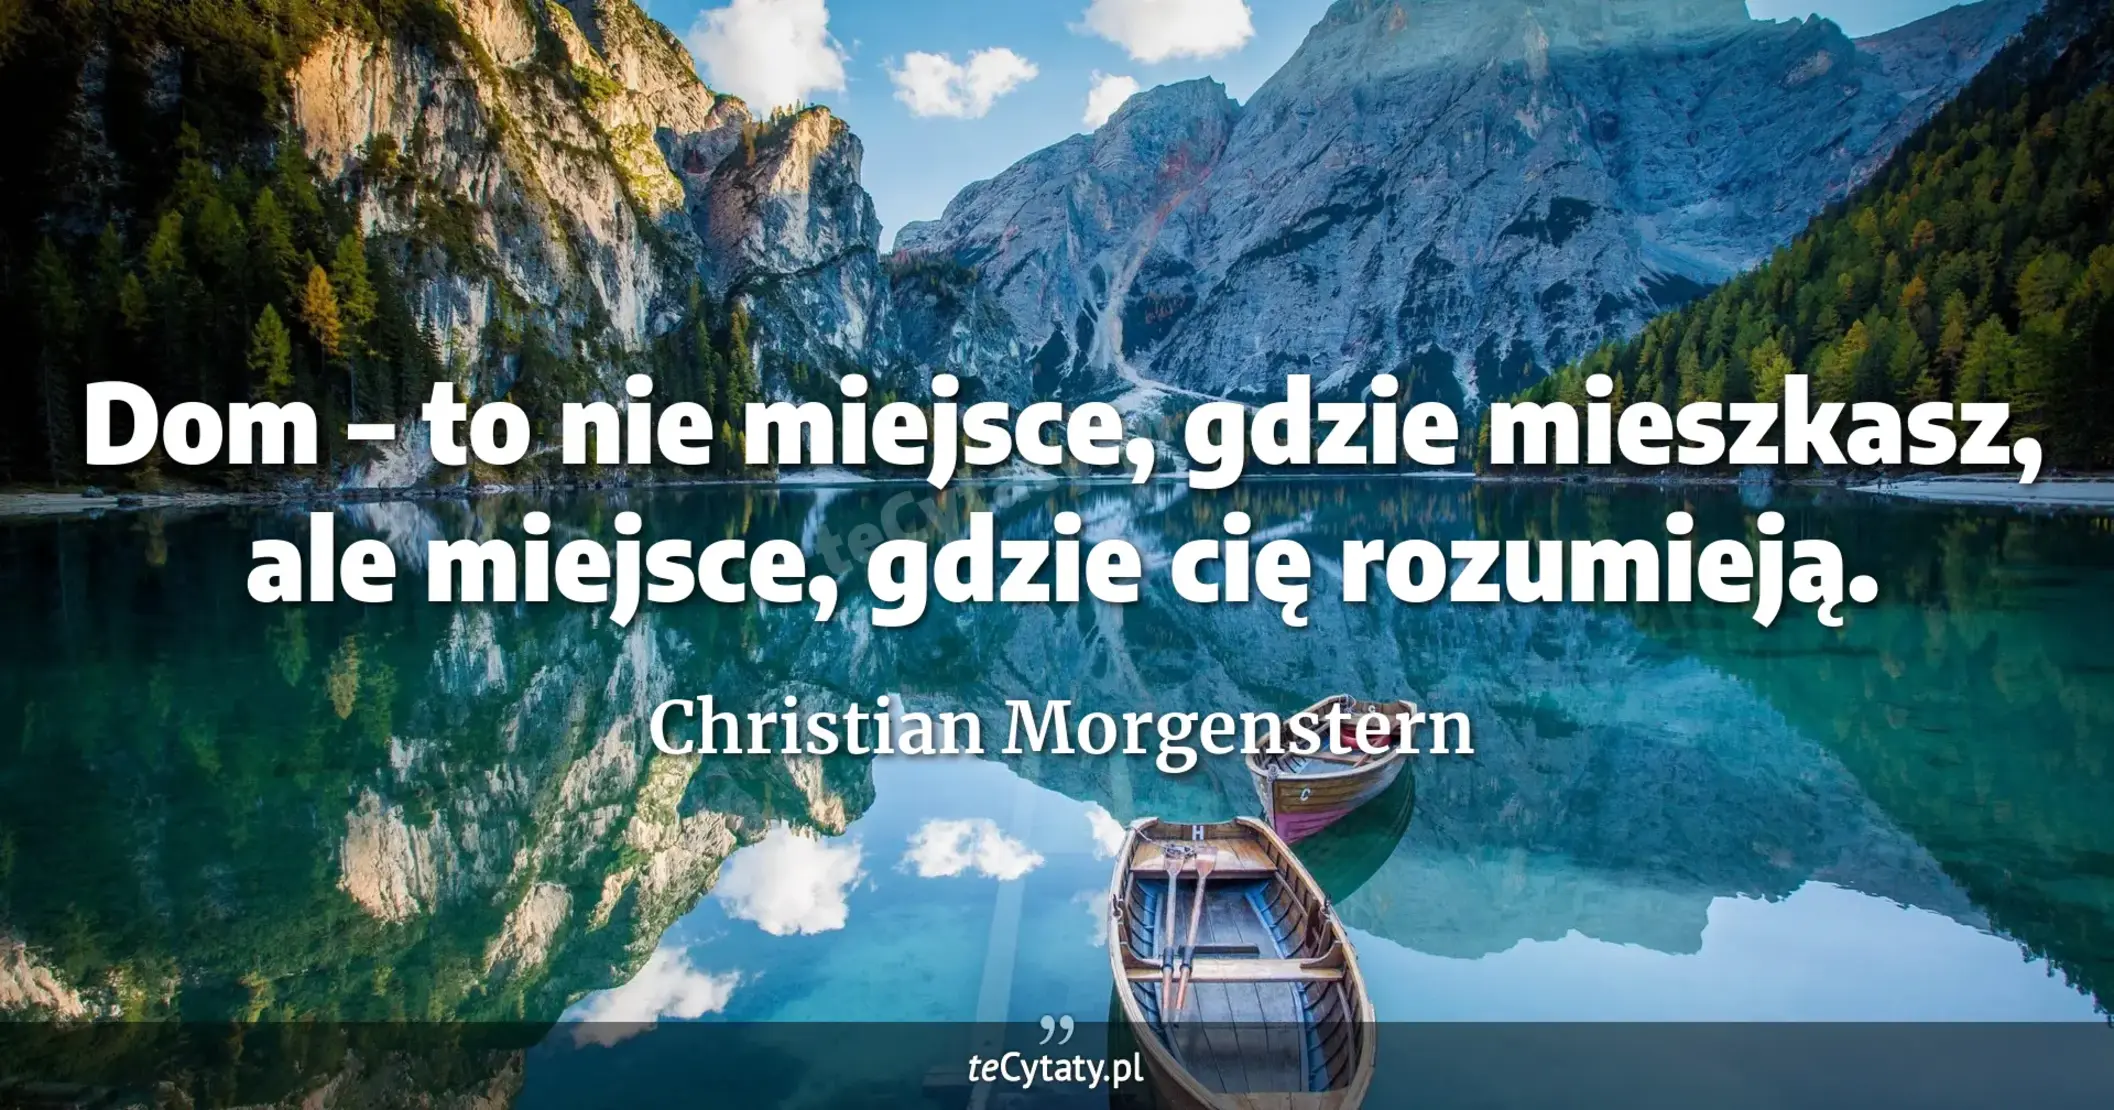 Dom – to nie miejsce, gdzie mieszkasz, ale miejsce, gdzie cię rozumieją. - Christian Morgenstern